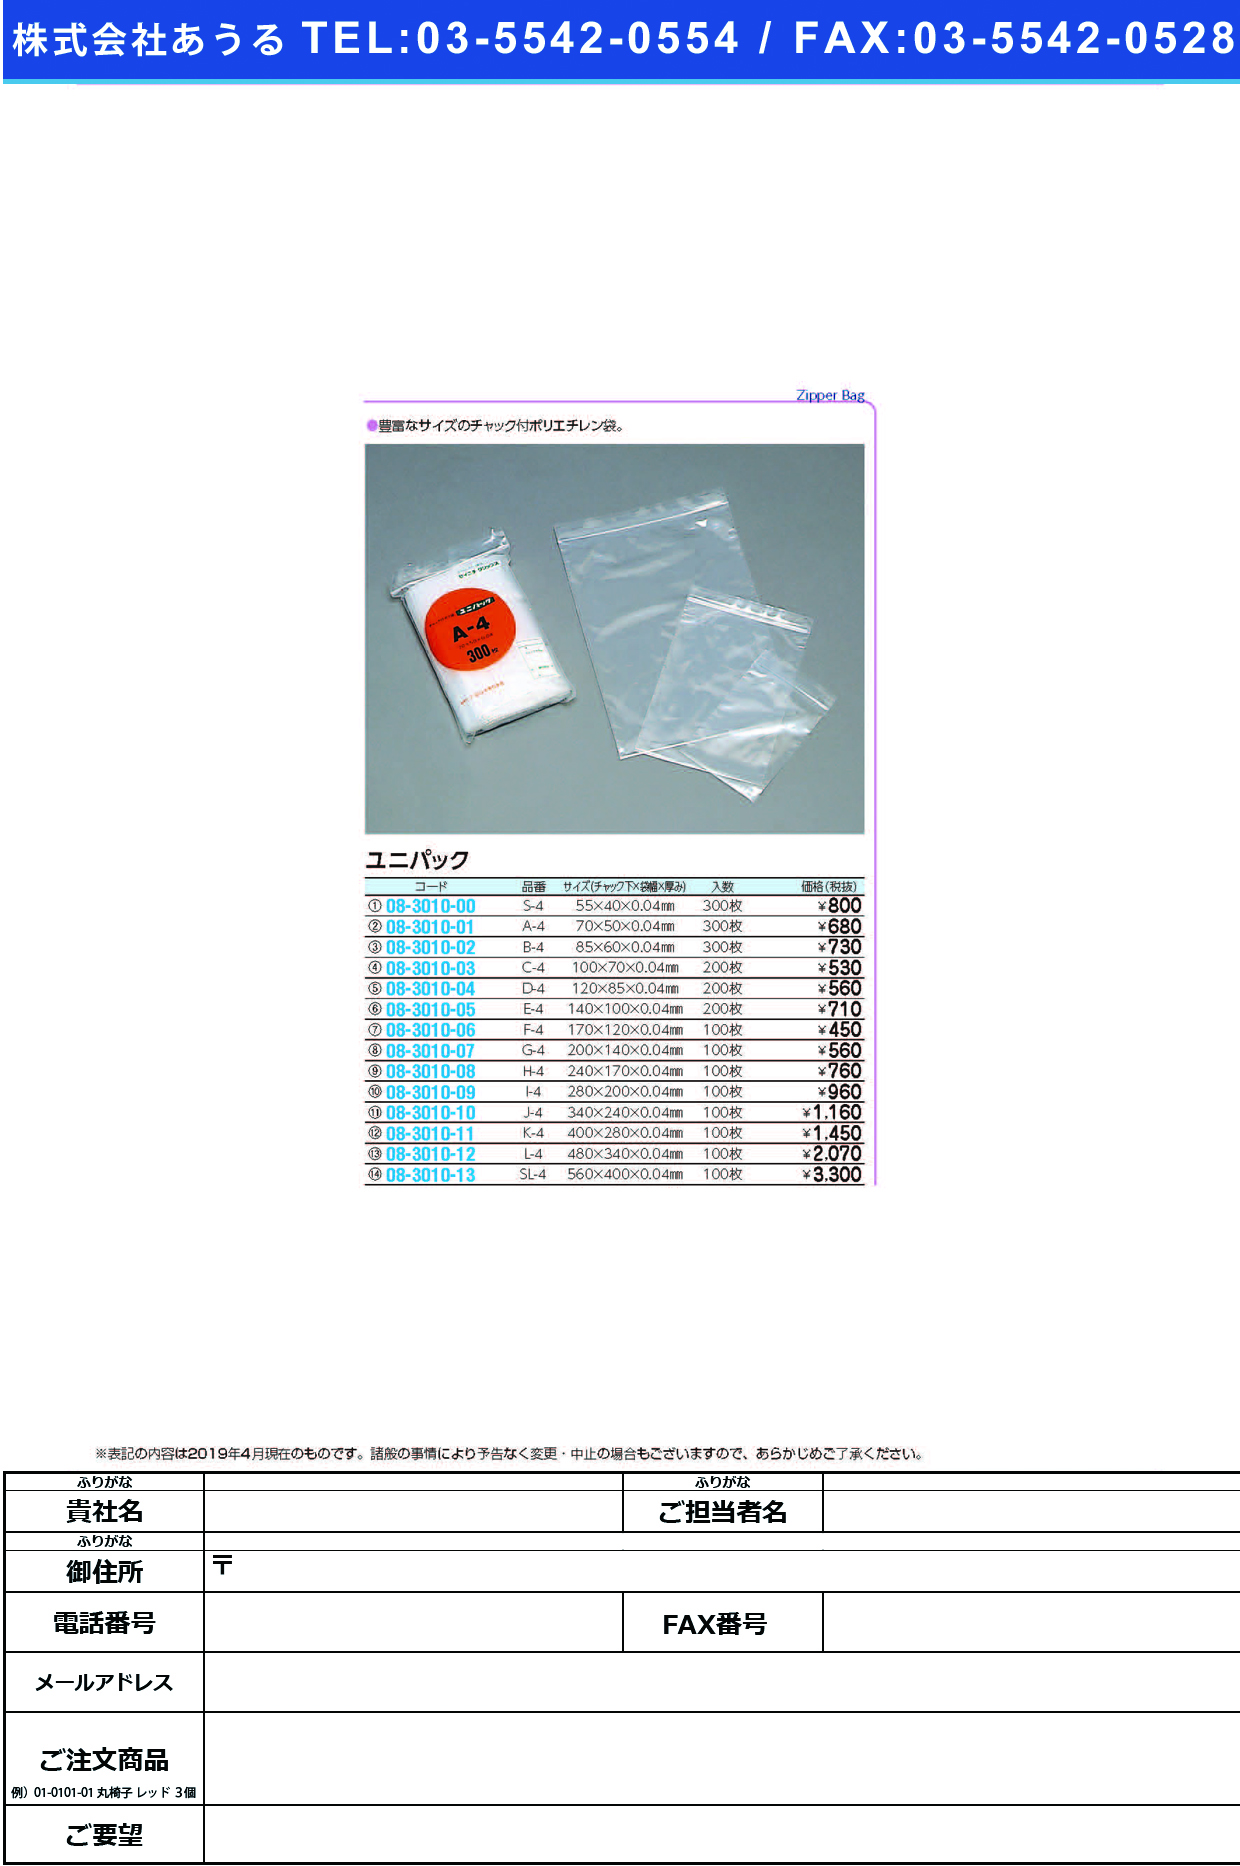 (08-3010-11)ユニパック K-4(400X280MM)100ﾏｲ ﾕﾆﾊﾟｯｸ【1袋単位】【2019年カタログ商品】